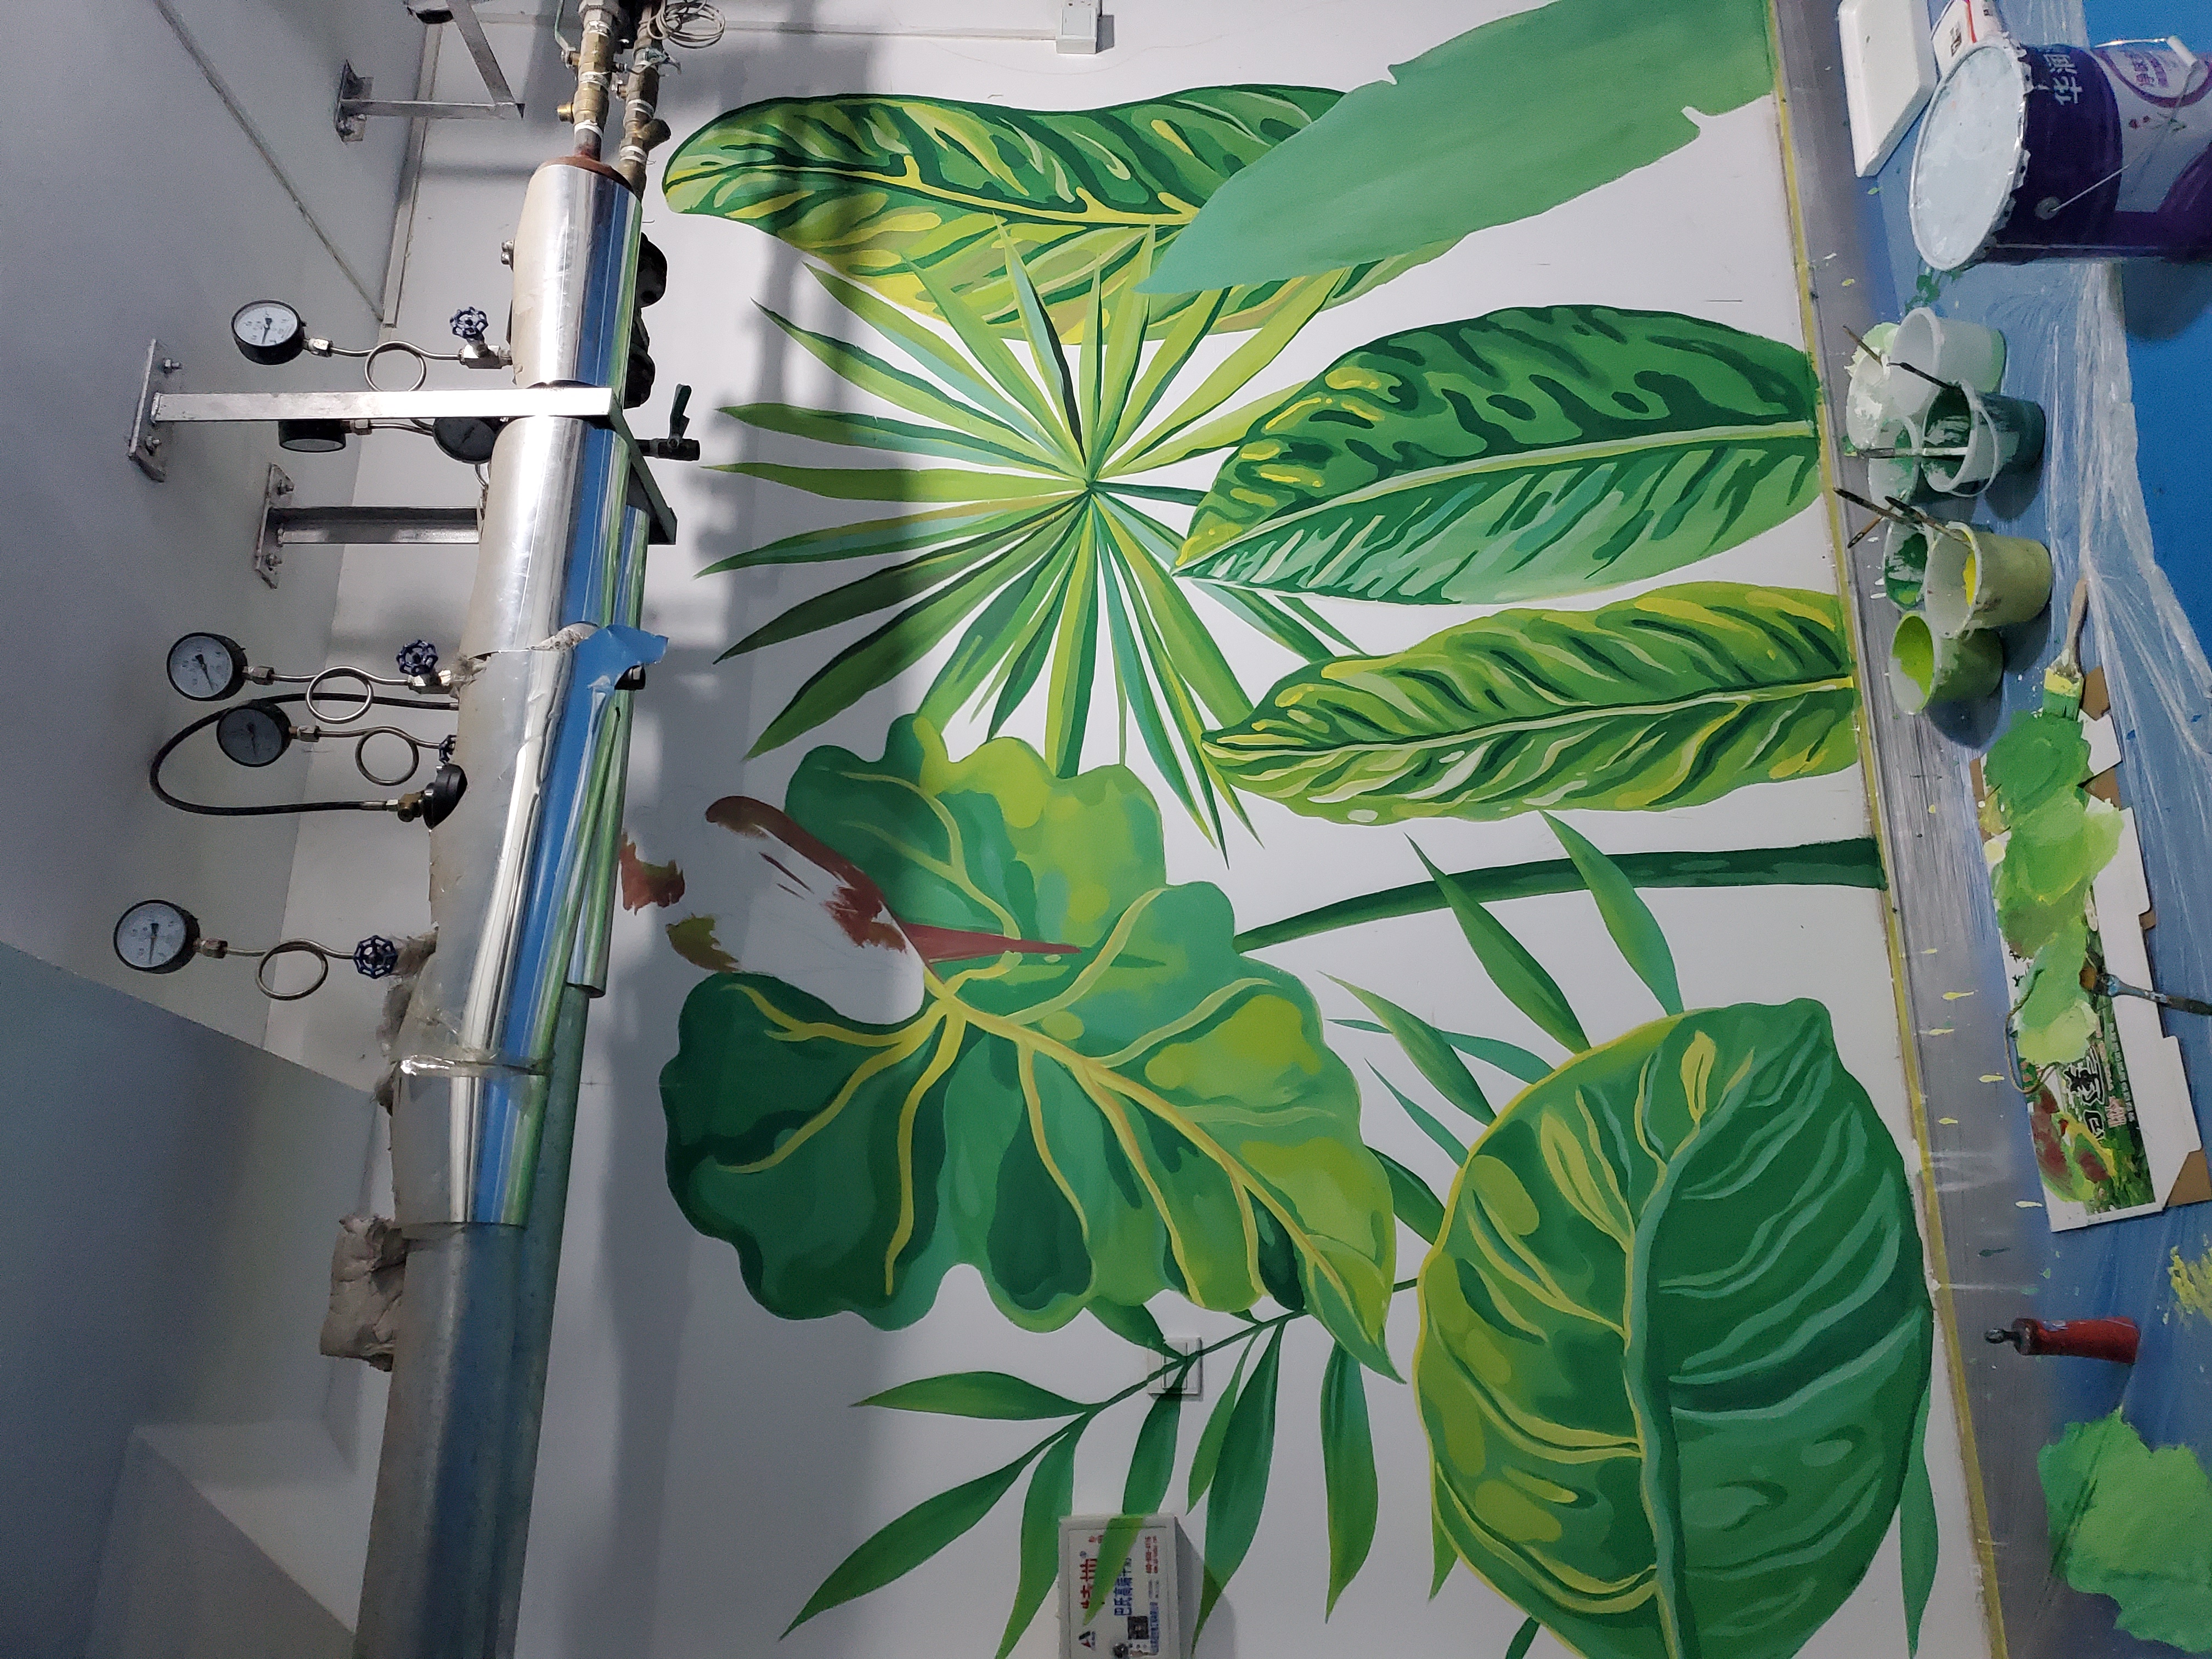 热带雨林线描墙绘图片